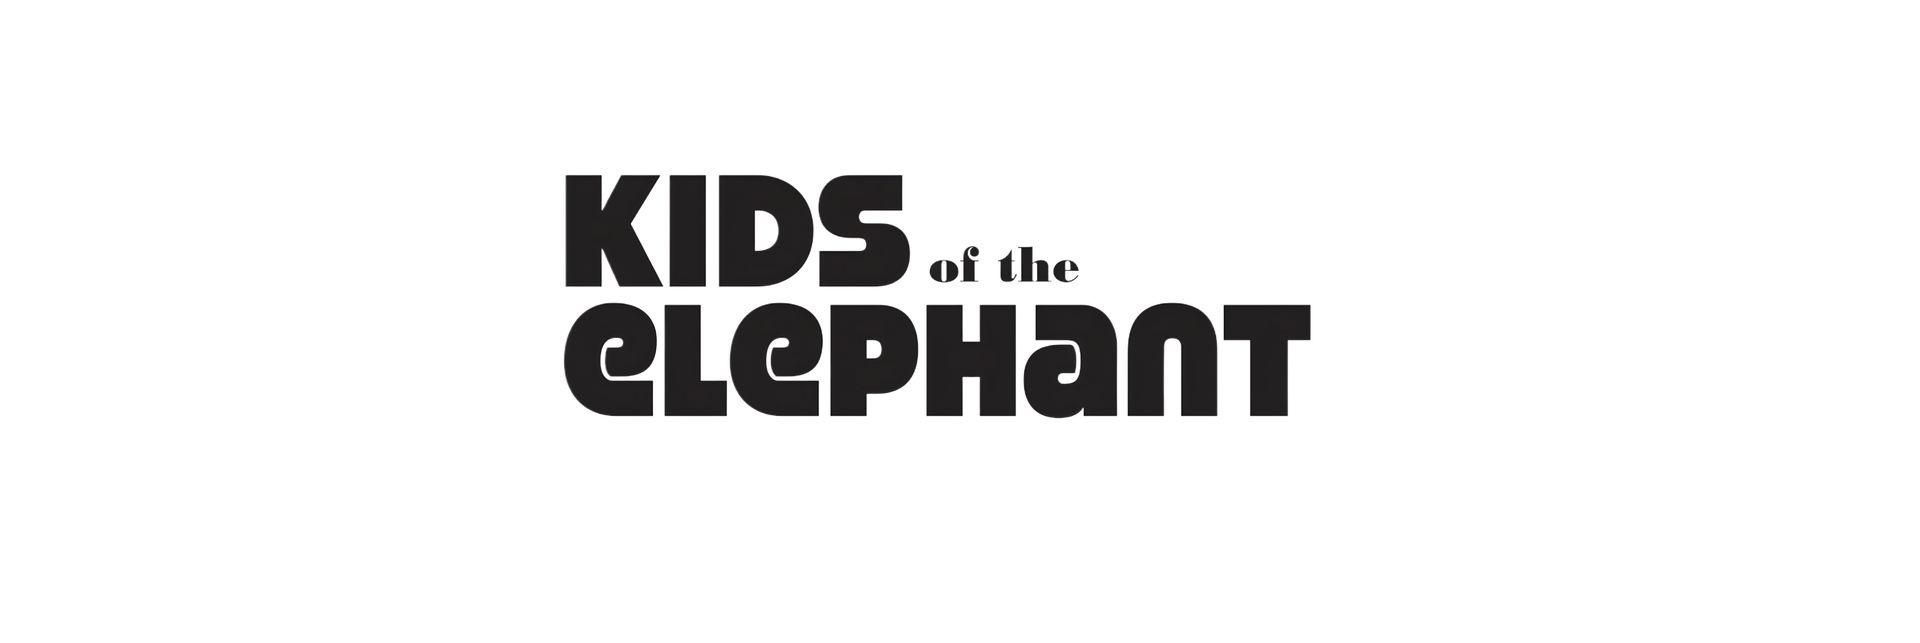 Kids of the Elephant